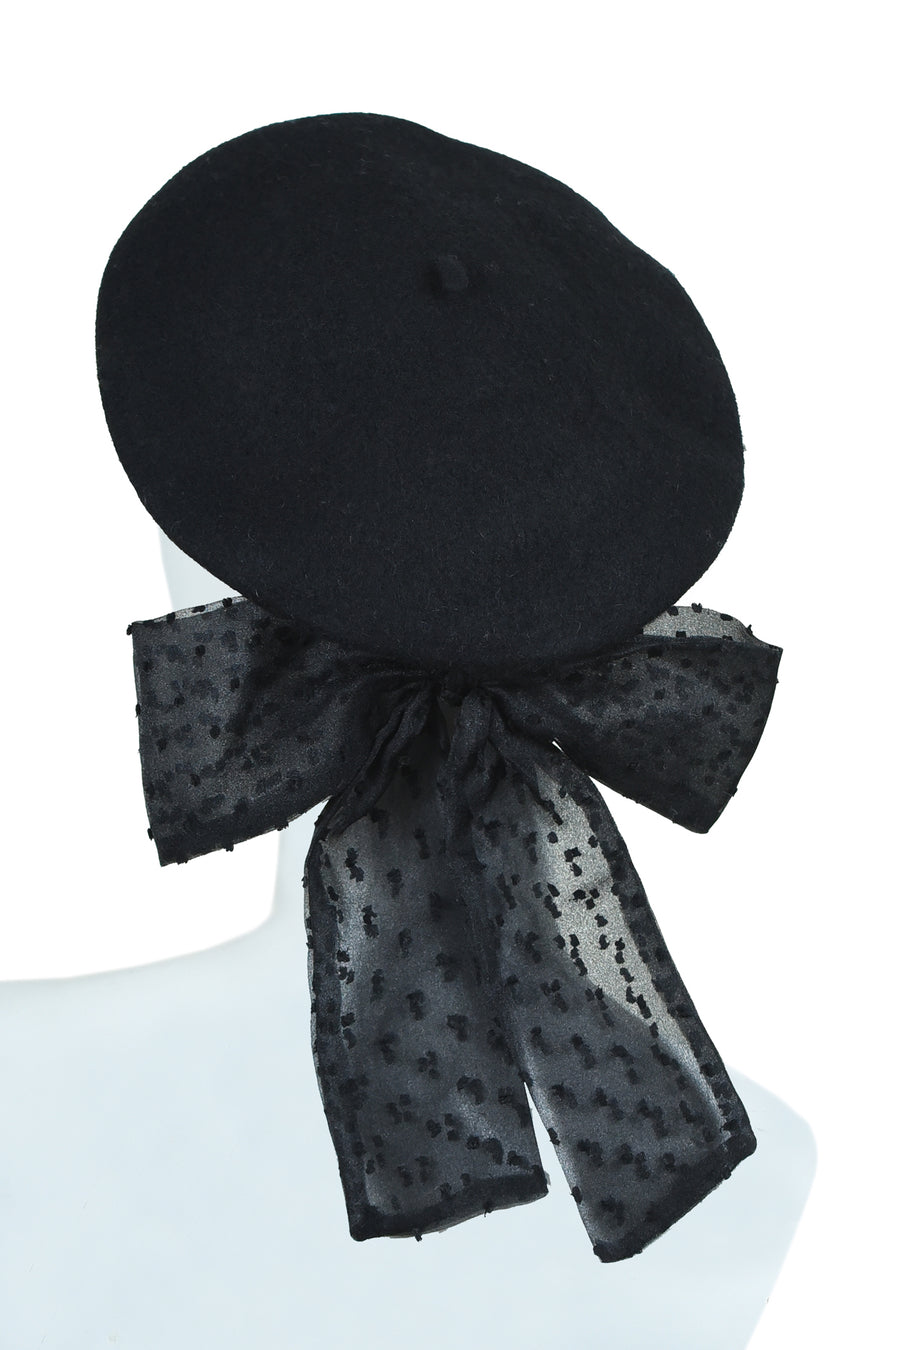 Le beret plumeti black - NEW !